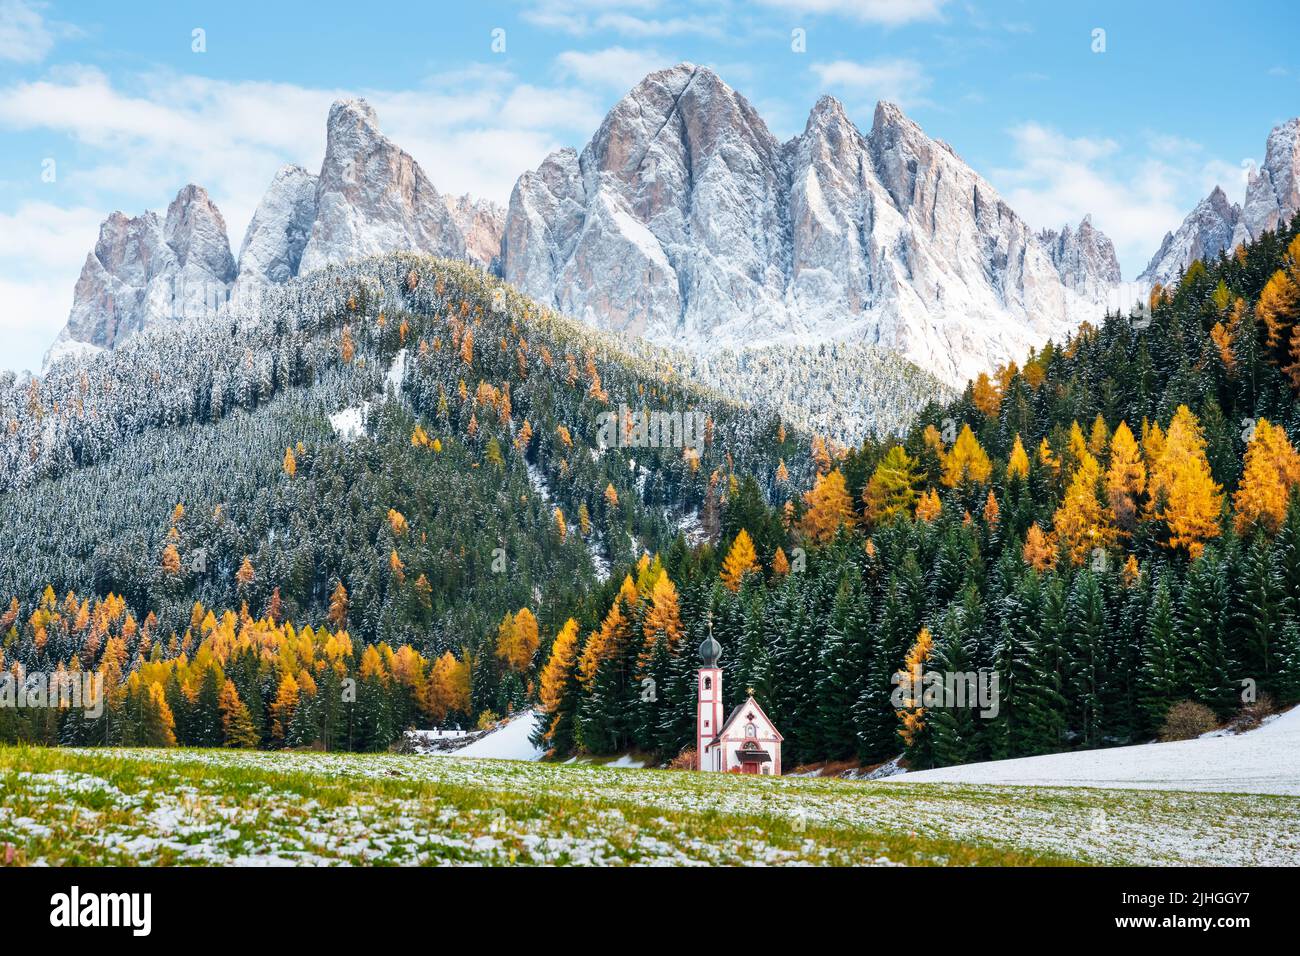 Die Dorfkirche von Santa Maddalena liegt in den herbstlichen Dolomiten. Herrliche Landschaft mit kleiner Kapelle auf verschneiten Wiesen in der Gemeinde Santa Magdalena. Dolomiten, Südtirol, Bozen, Italien Stockfoto